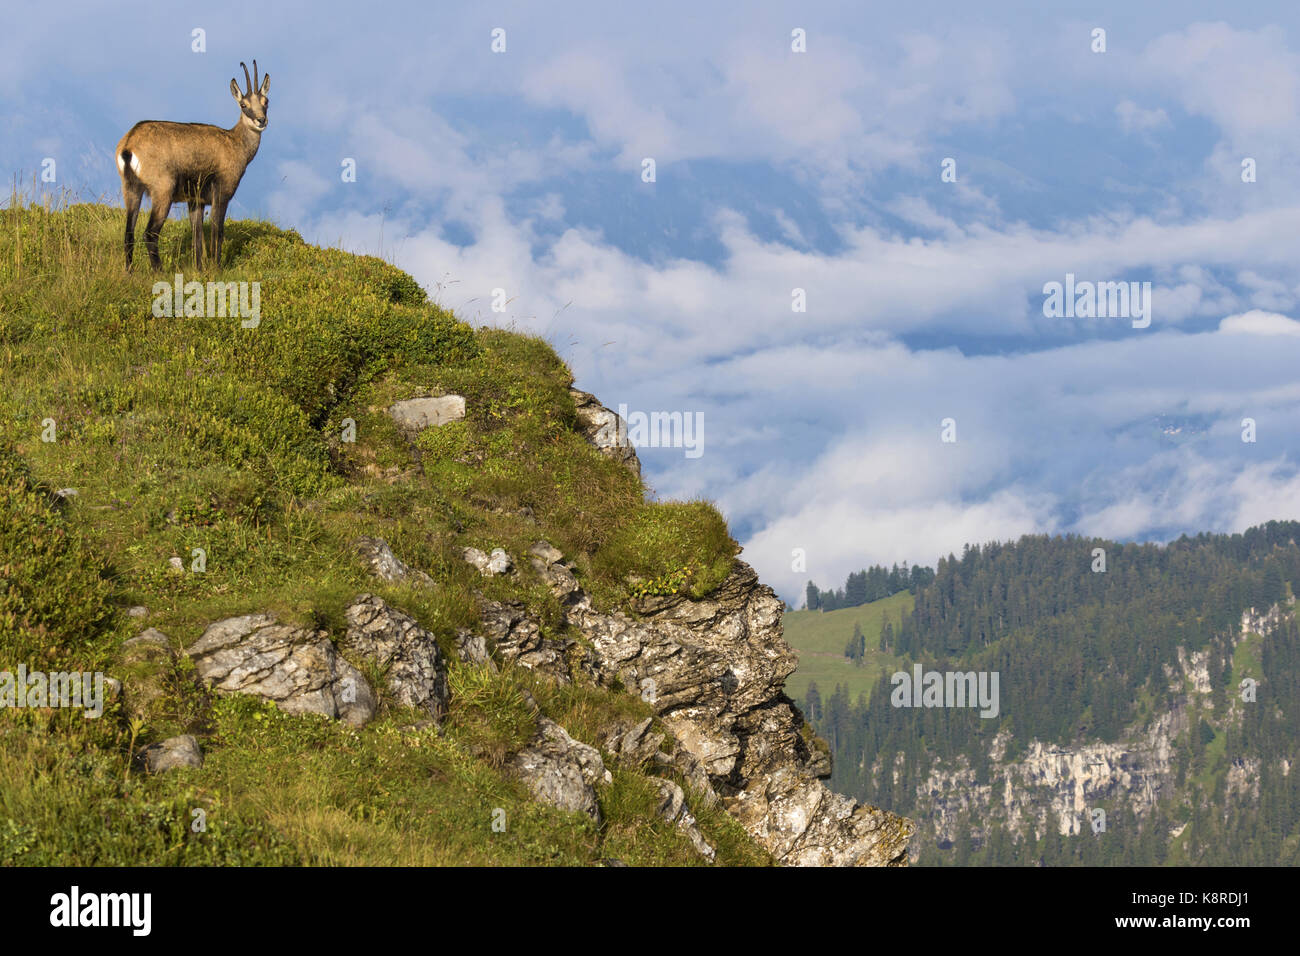 Gamuza (Rupicapra rupicapra), adultos en la pendiente, niederhorn permanente, en el Oberland bernés en Suiza, agosto Foto de stock